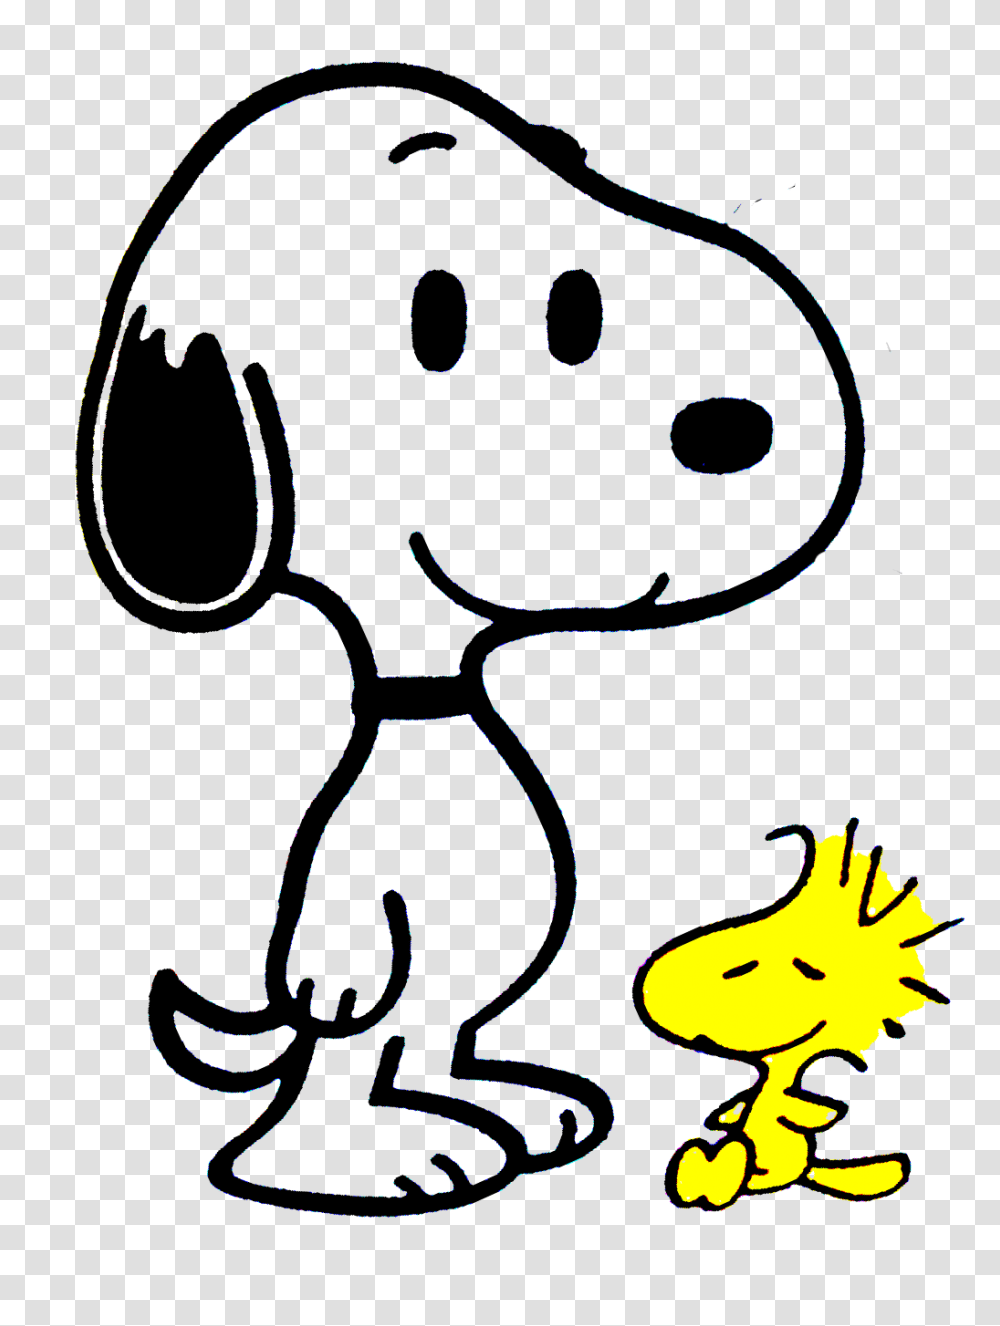 Snoopy Sentado Image, Silhouette, Light Transparent Png